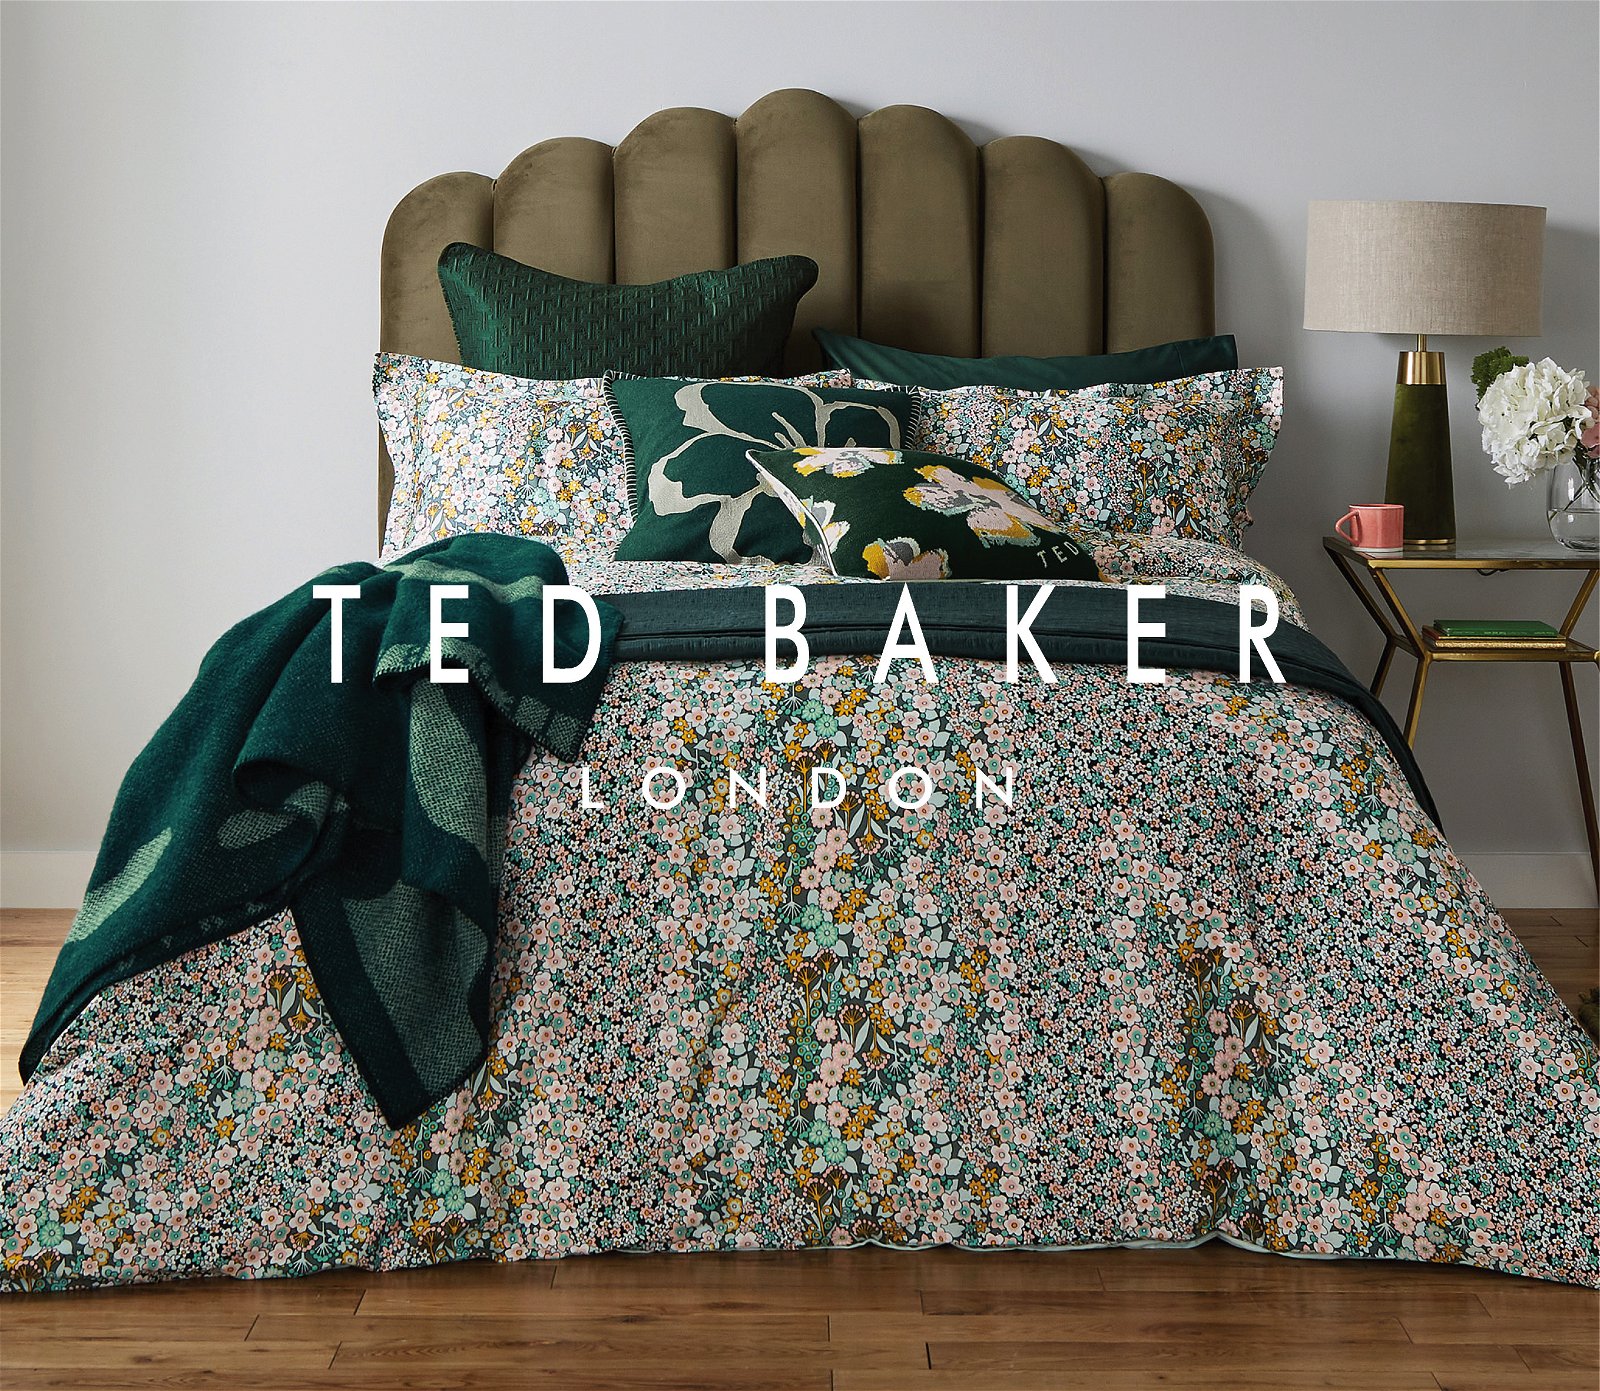 Ted Baker Range